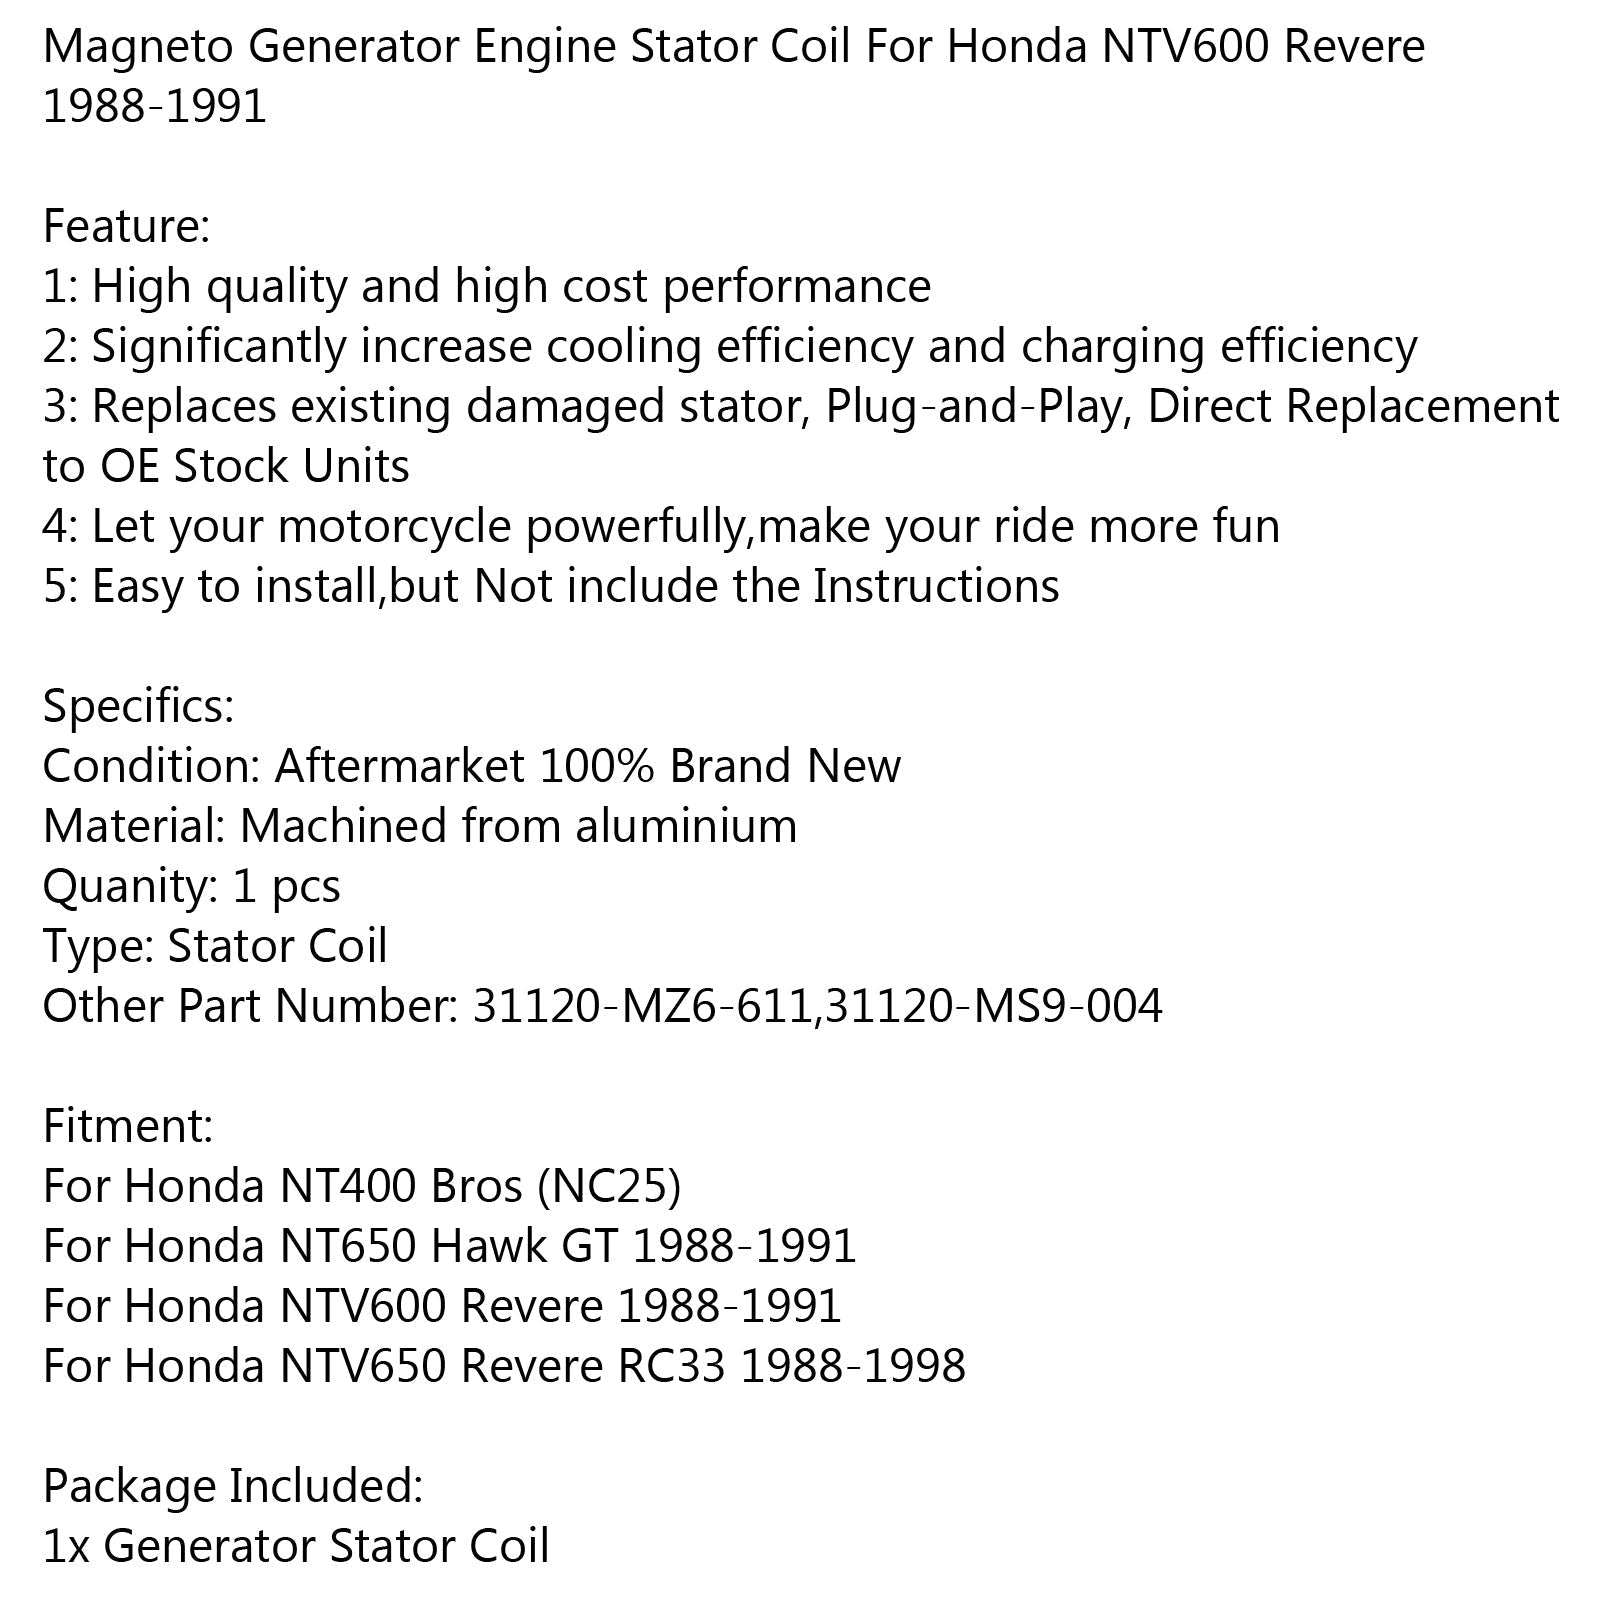 Bobine de stator de générateur pour Honda NTV650 Revere RC33 (88-98) NT650 Hawk GT (88-91) Générique